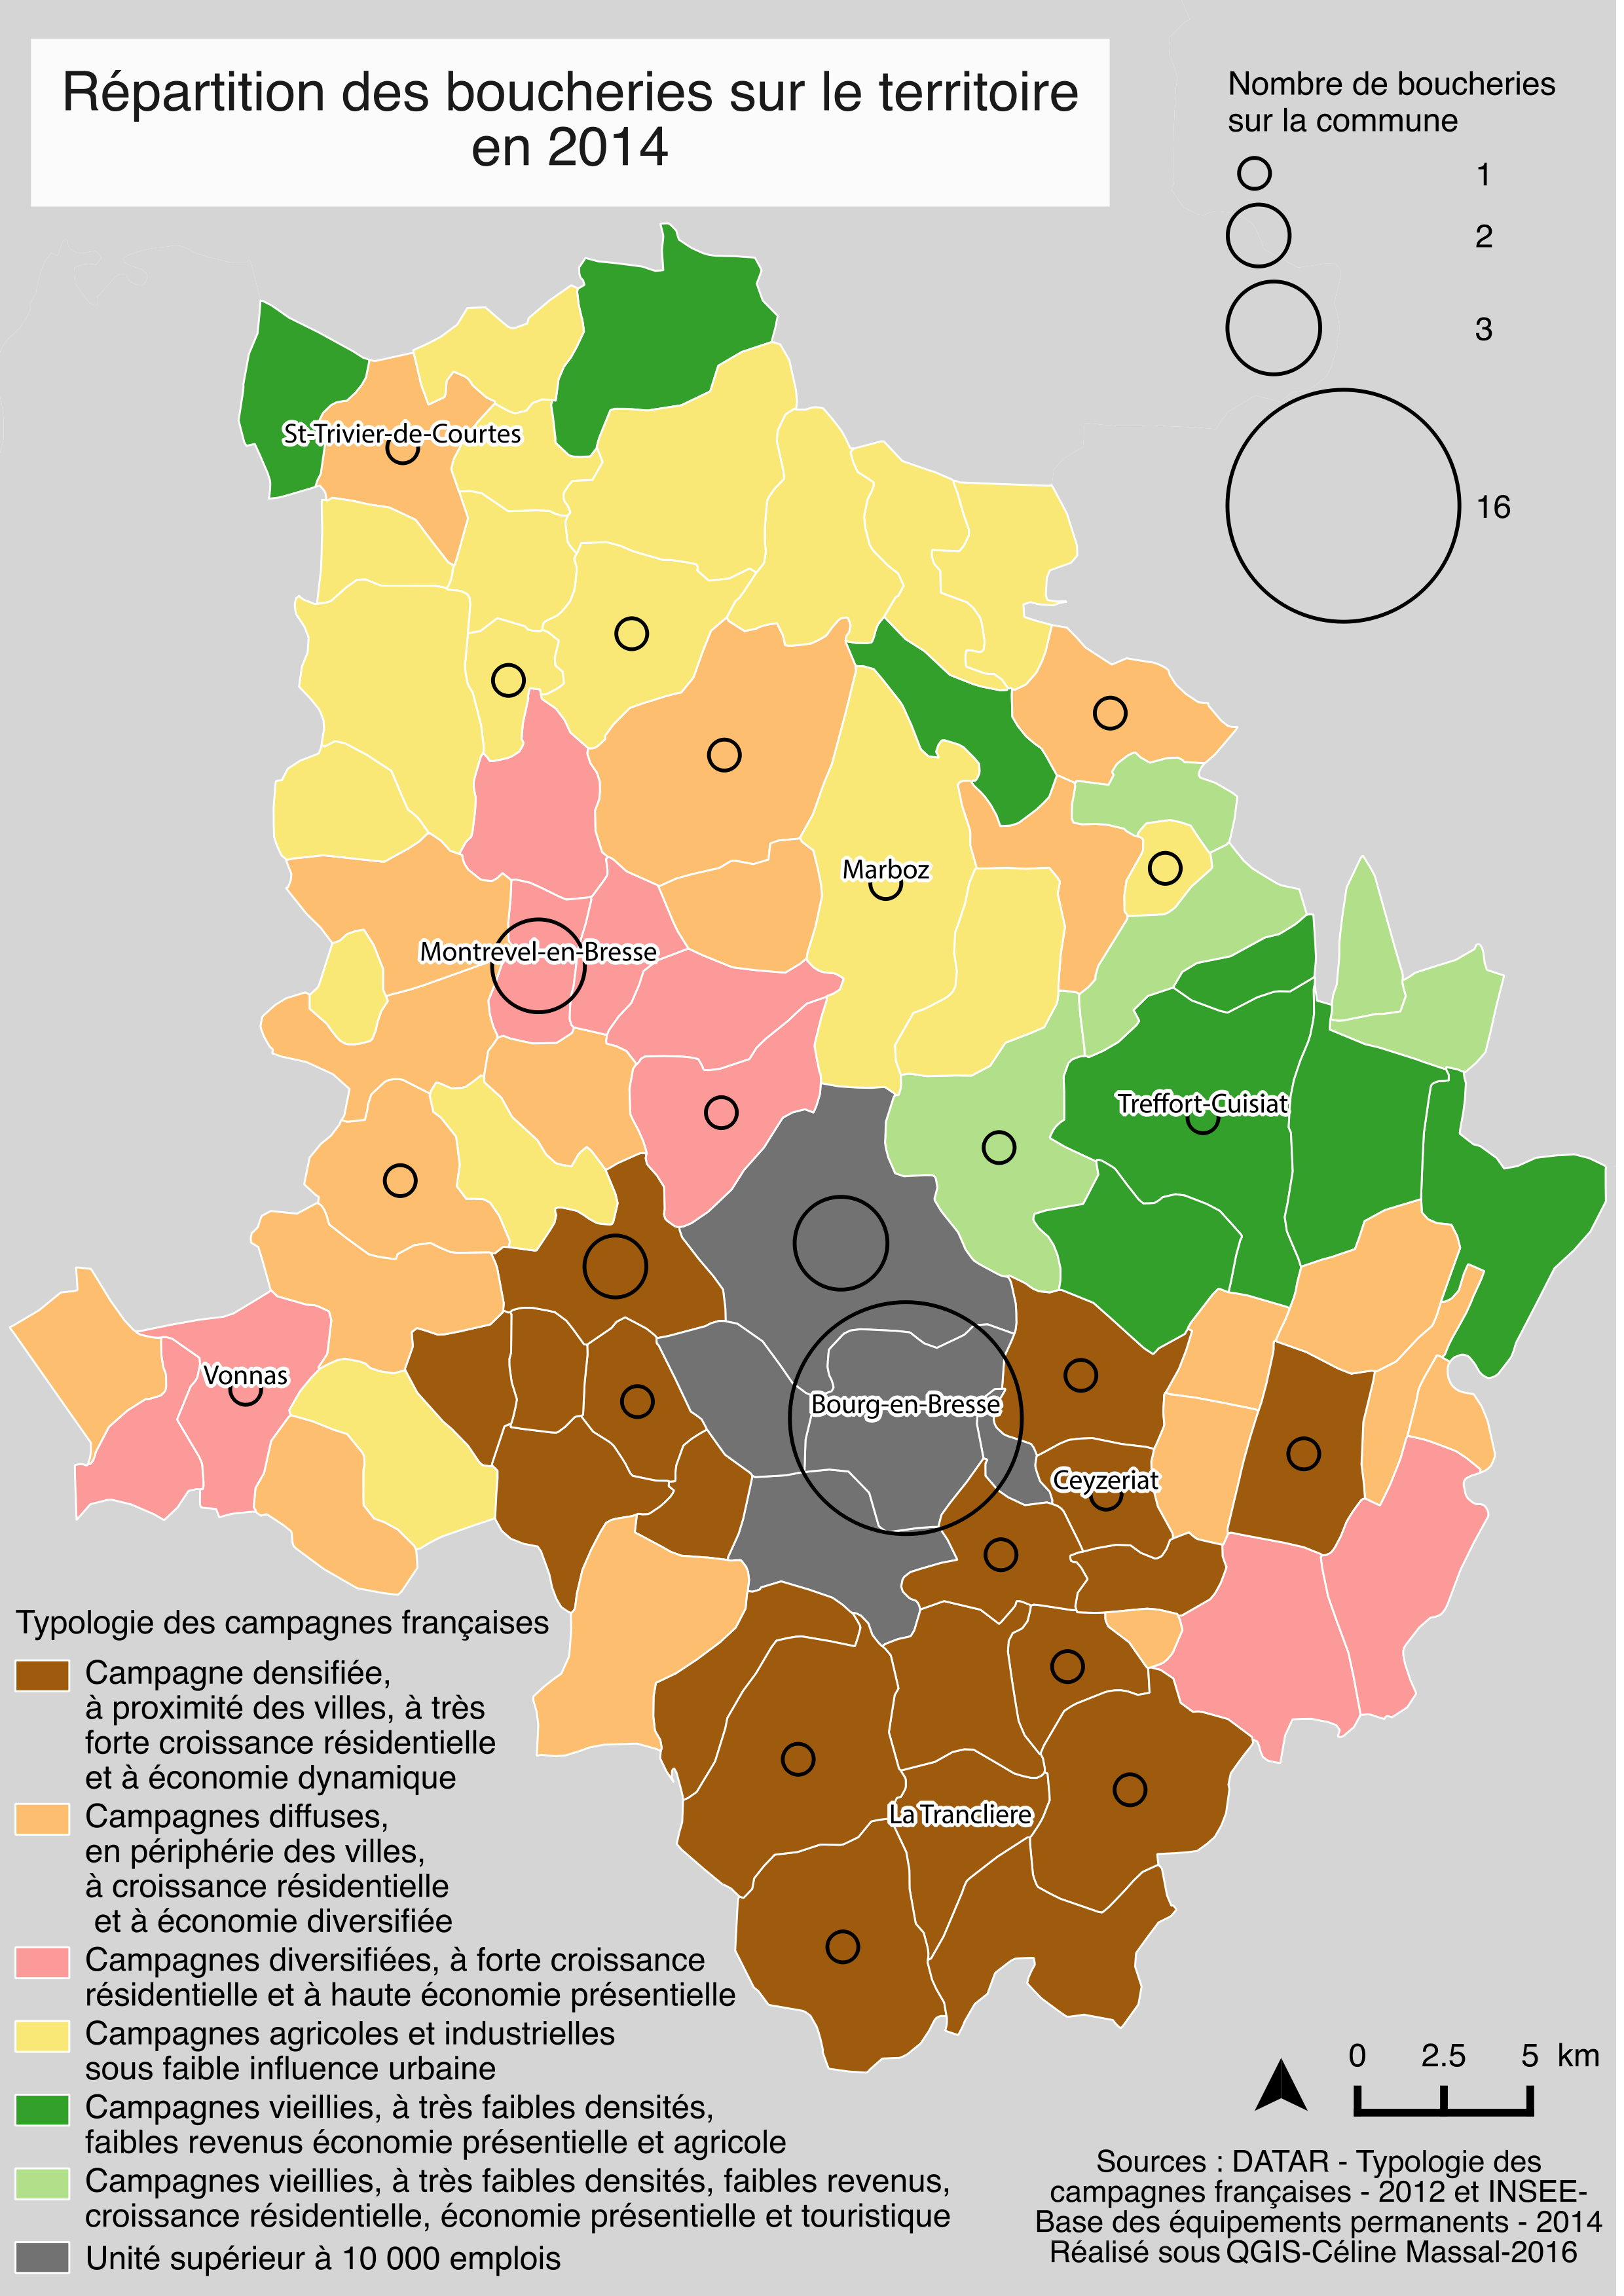 Répartition des boucheries sur le territoire bressan en 2014 (haute définition)